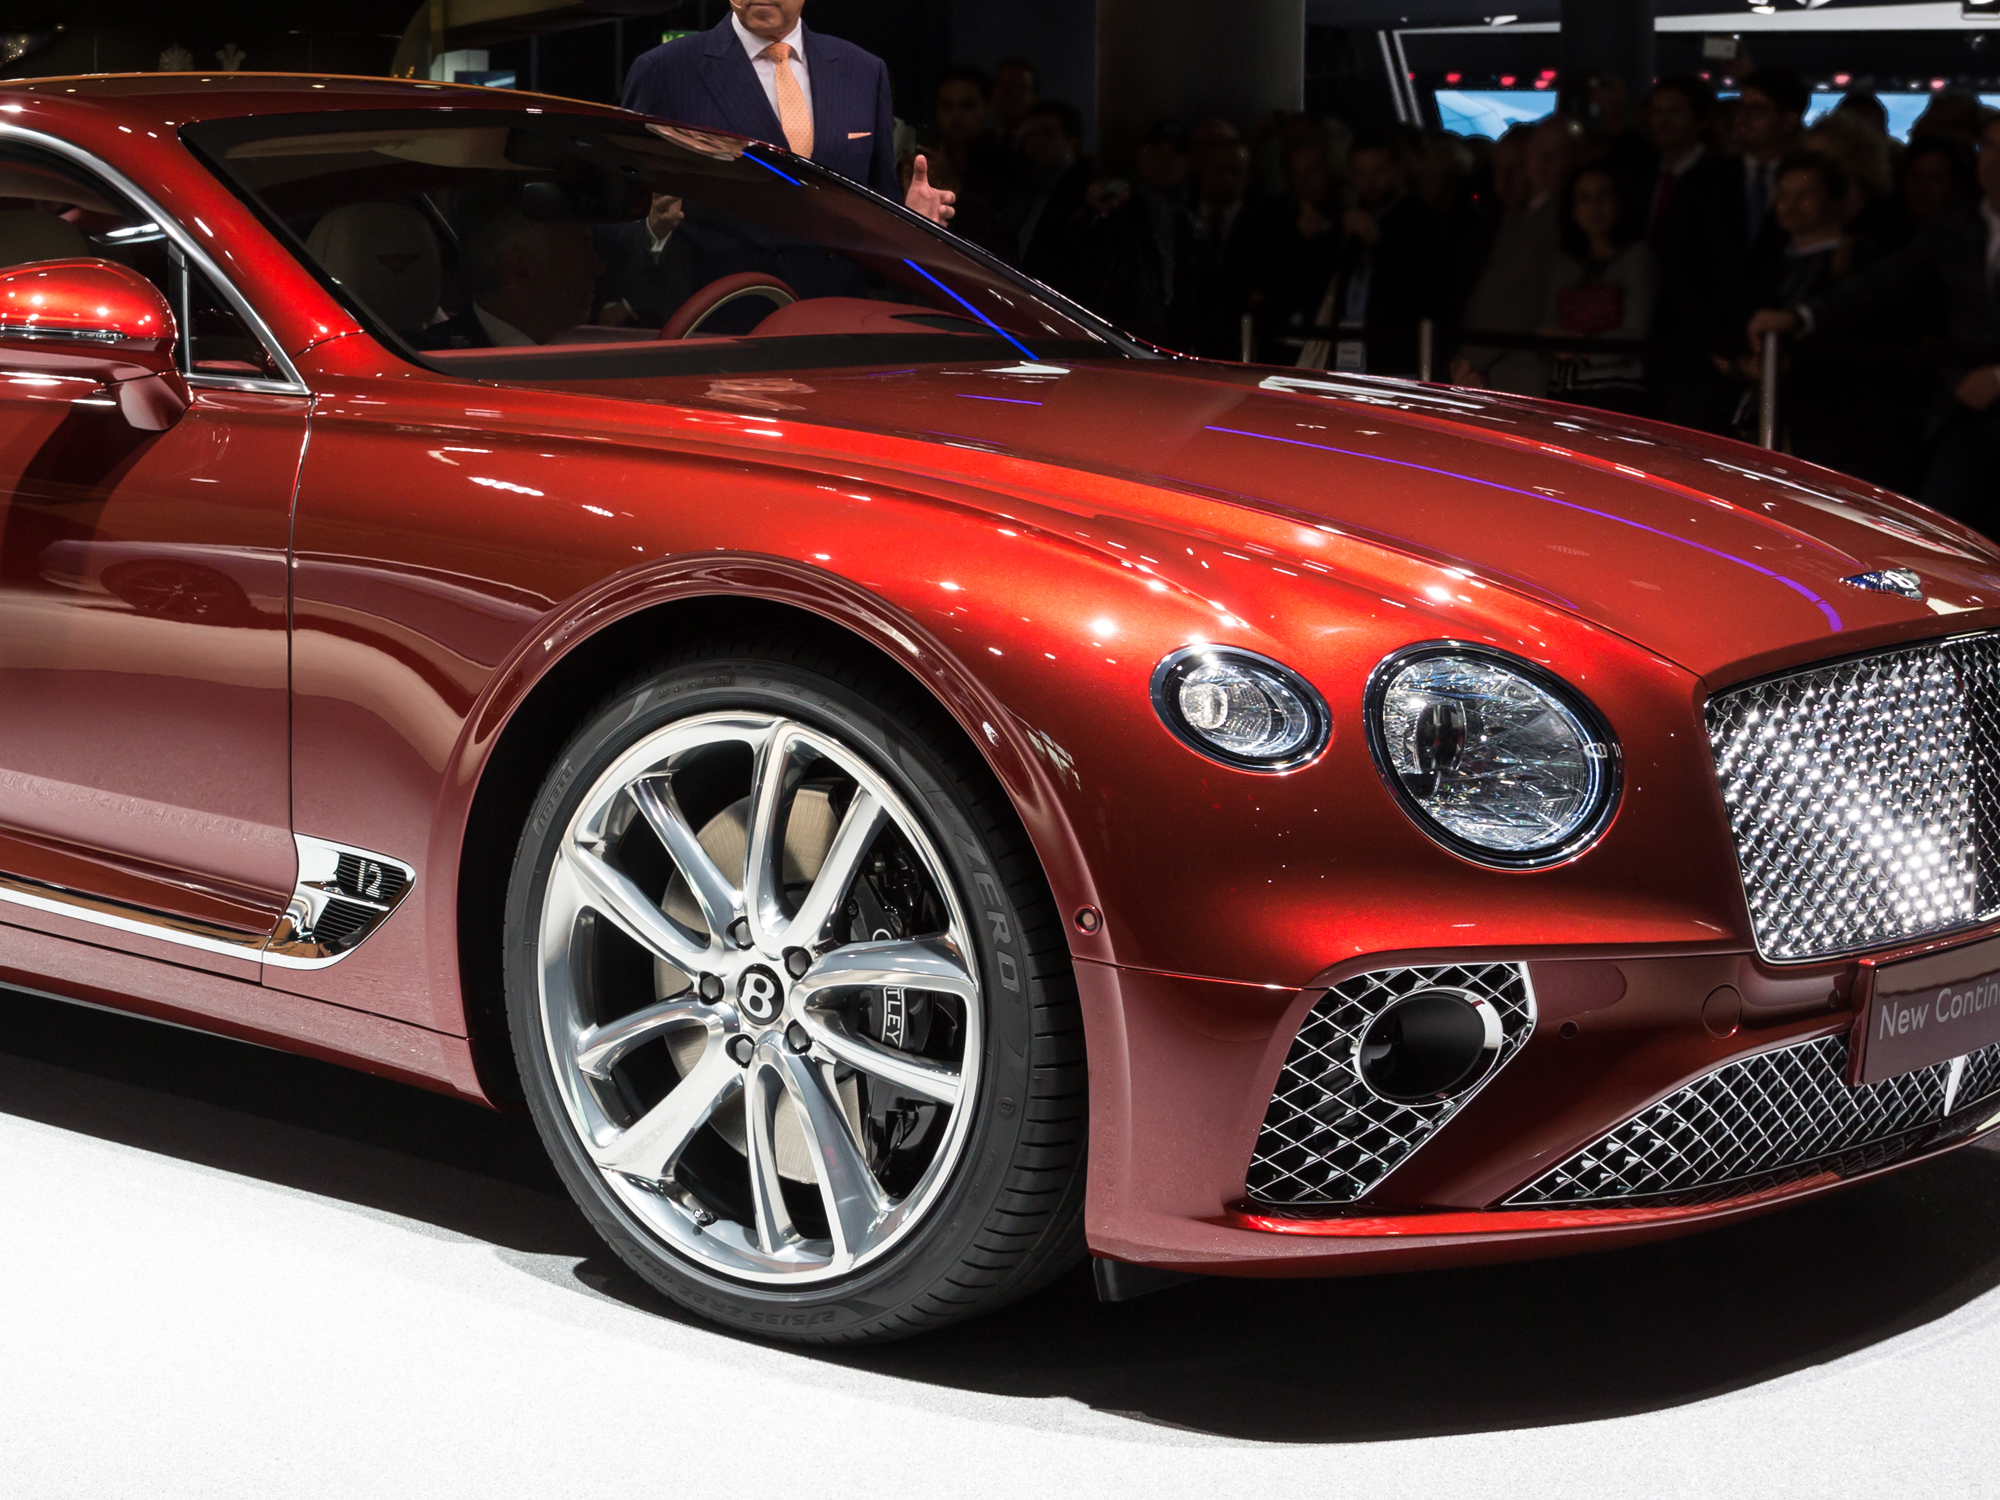 ベントレー買取価格相場情報 Bentleyの売却 査定は専門店で マリオットマーキーズブログ